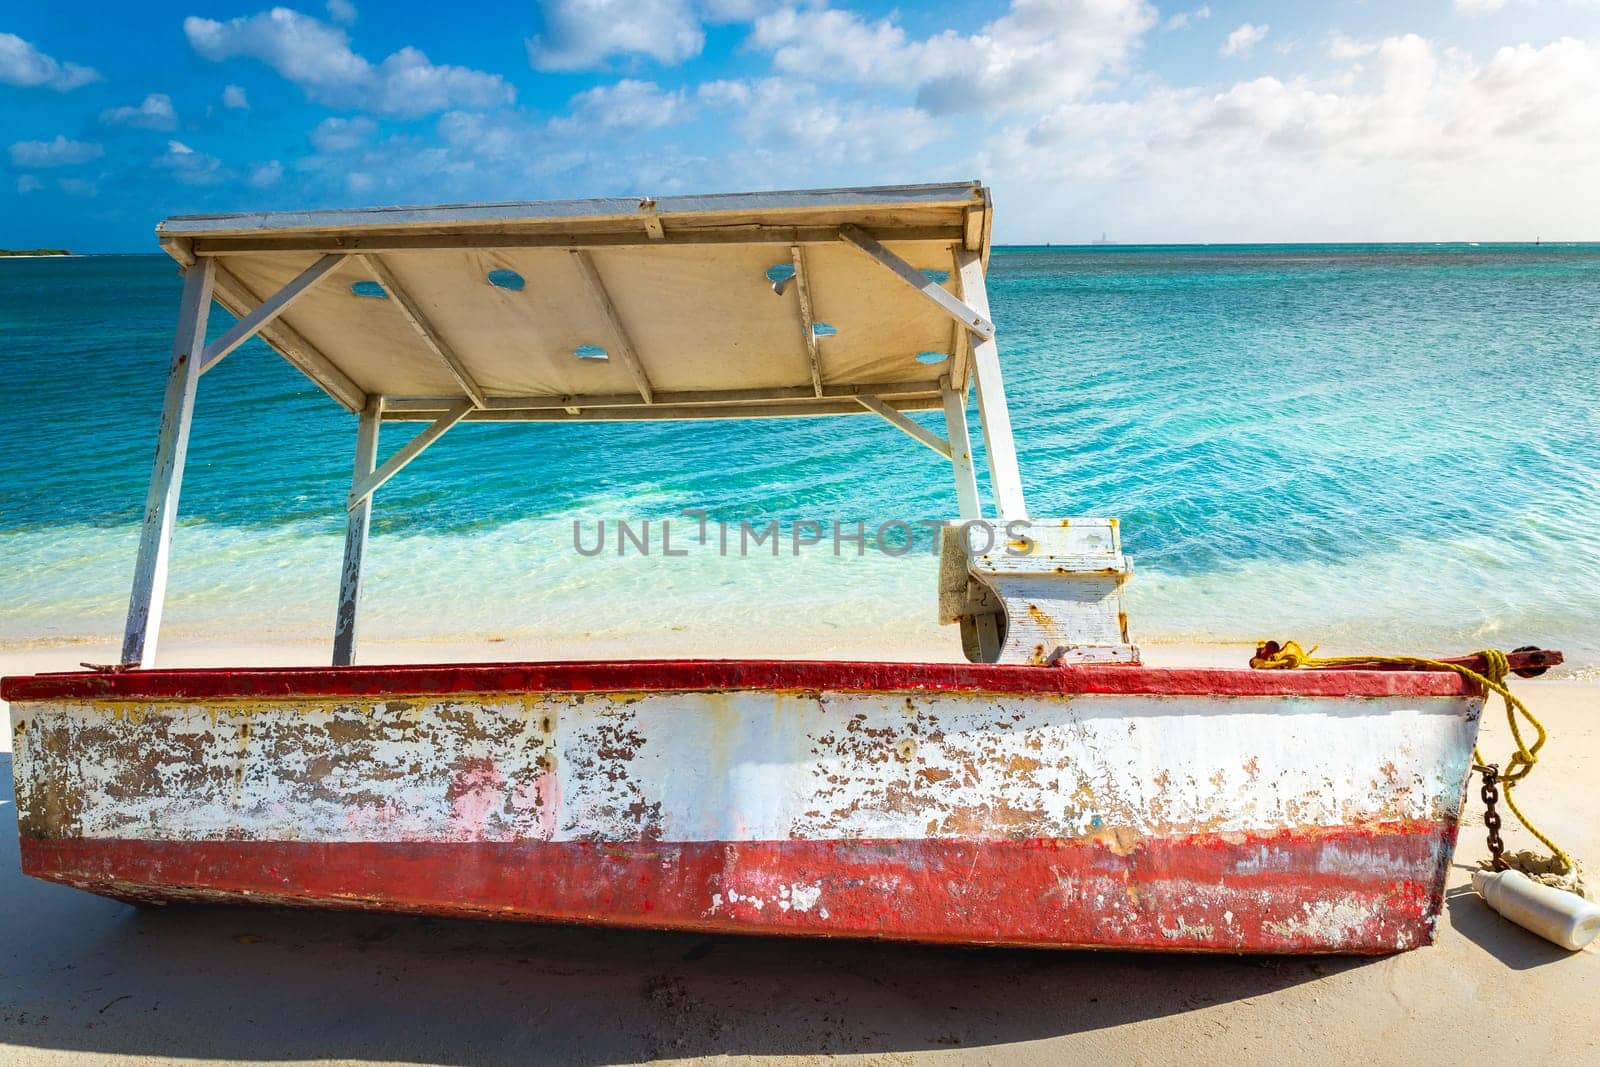 Trawler and rustic fishing boat on secluded beach in Aruba island, Caribbean sea